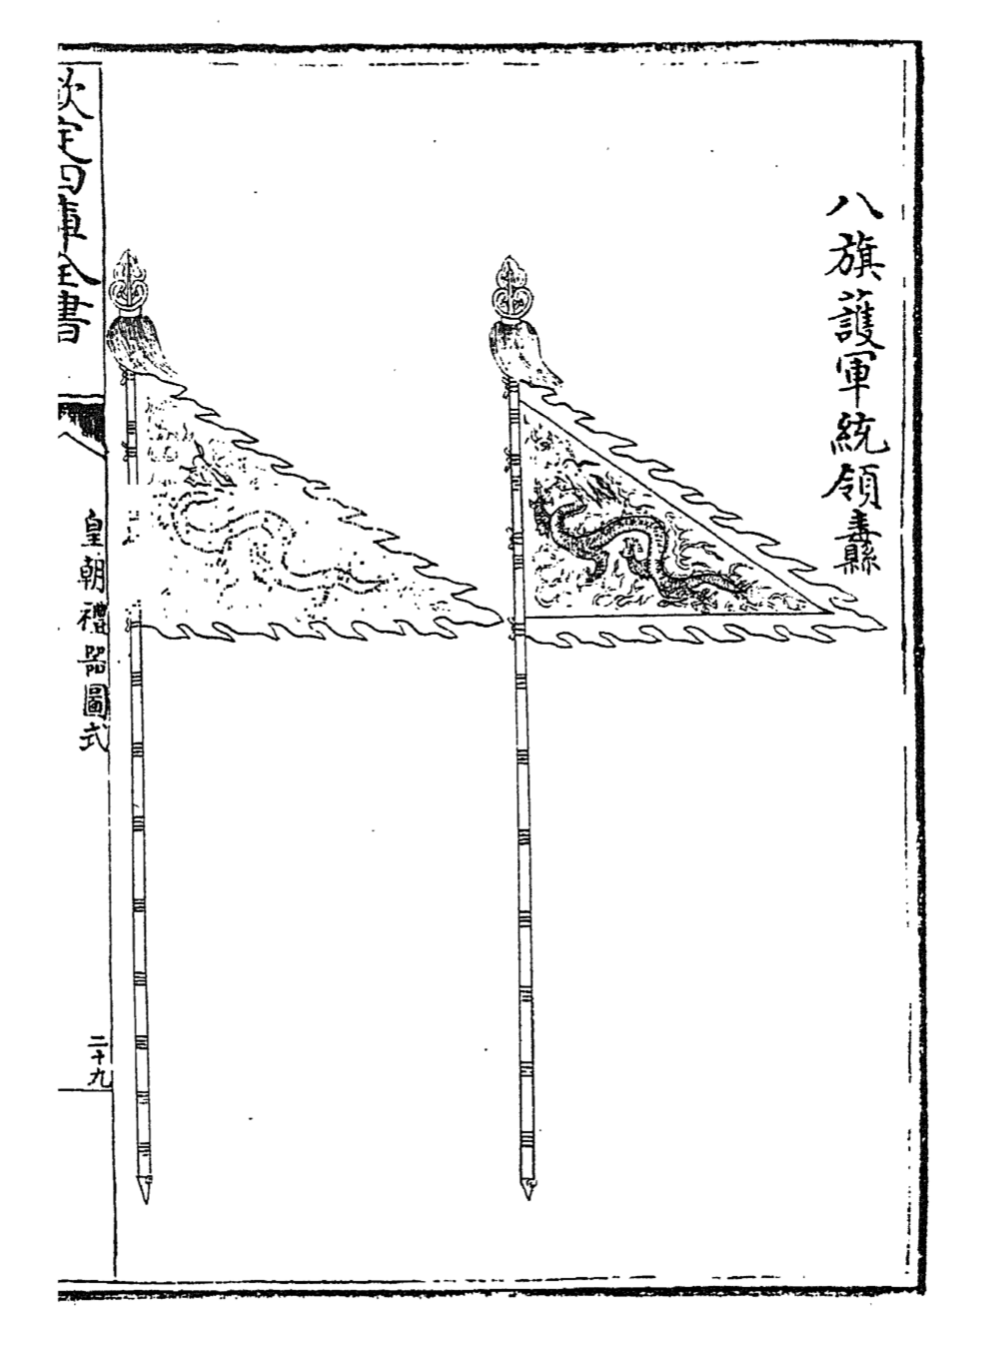 Flags of the Hanjun